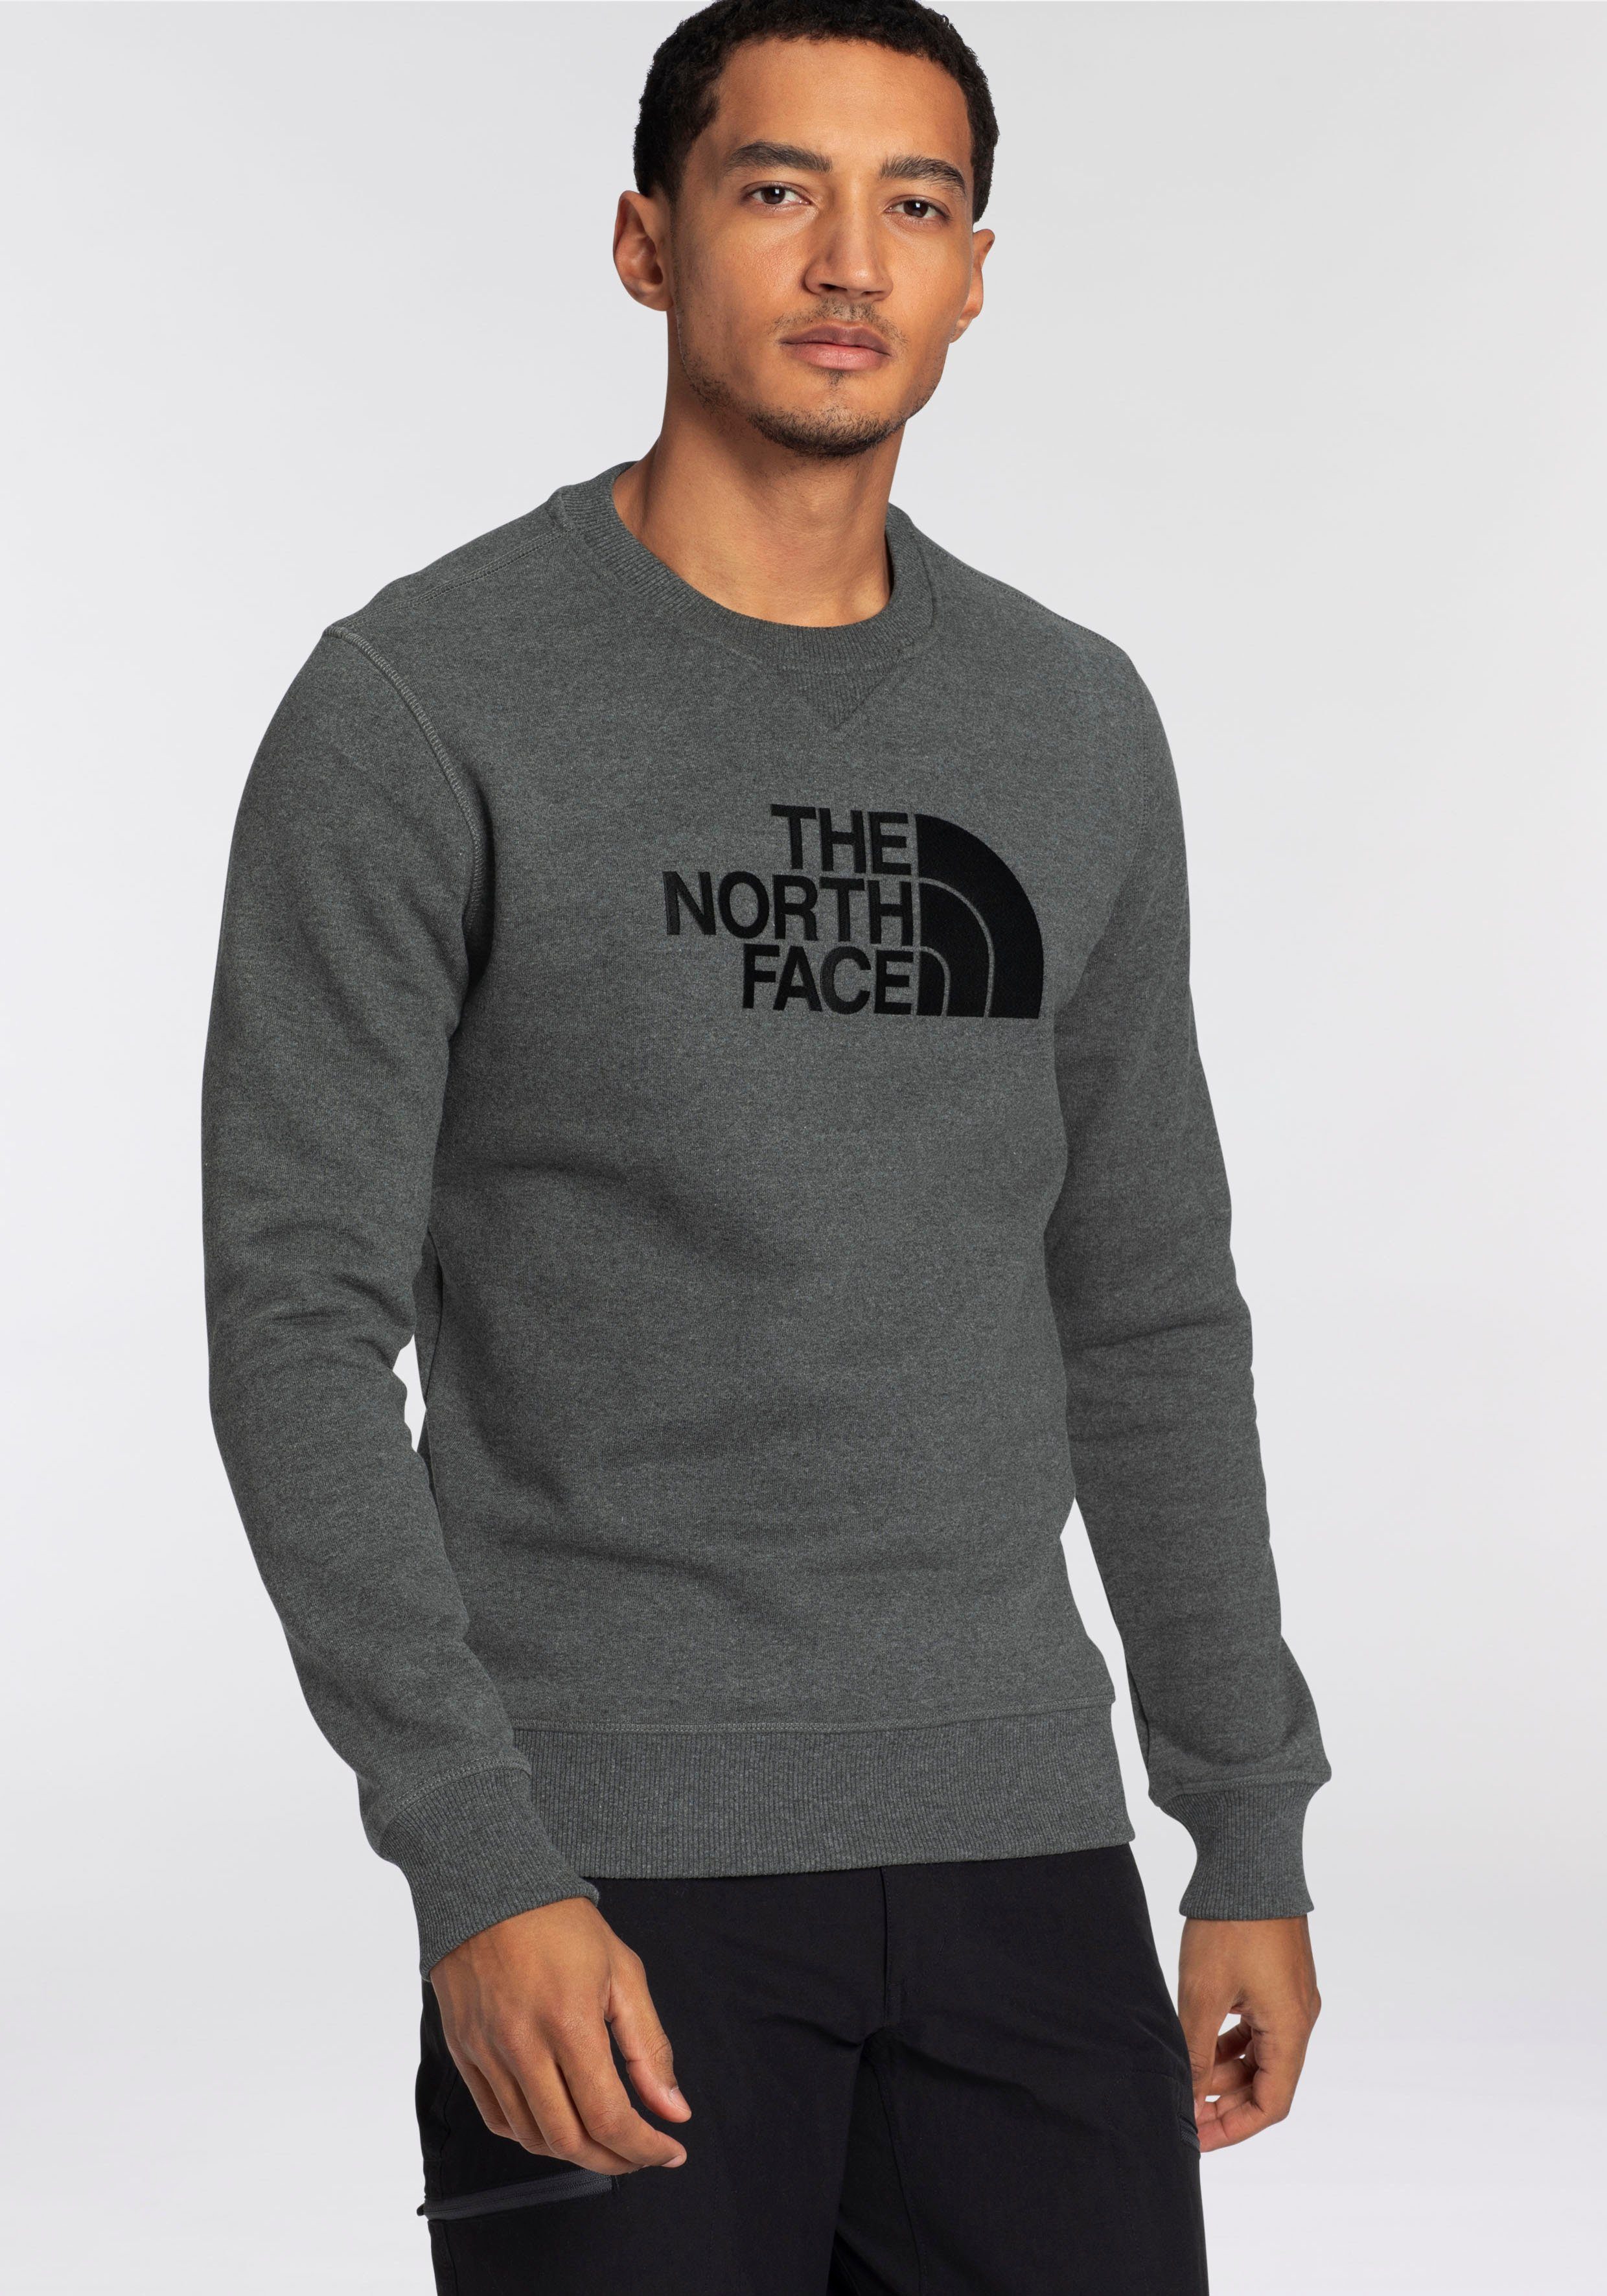 North Sweatshirt Sweatshirt The von The DREW Face PEAK, North Face